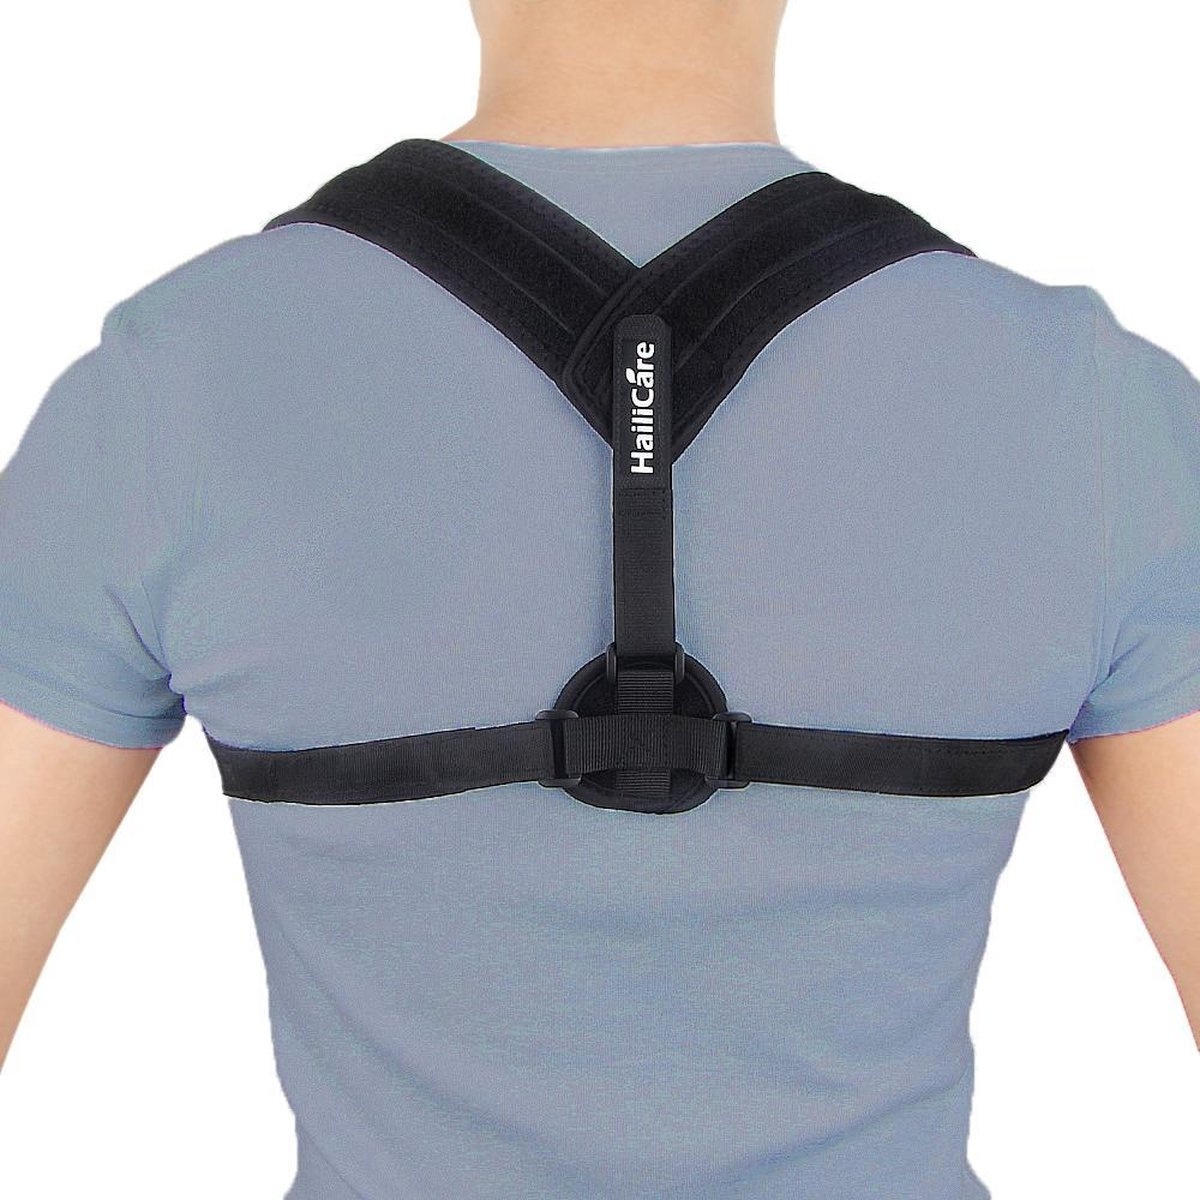 Korrektur und günstig Kaufen-Rückenbandage - Einheitsgröße - Die Original Athena Premium Rückenbandage - Haltungskorrekturbandage - Rücken und Schulter. Rückenbandage - Einheitsgröße - Die Original Athena Premium Rückenbandage - Haltungsko